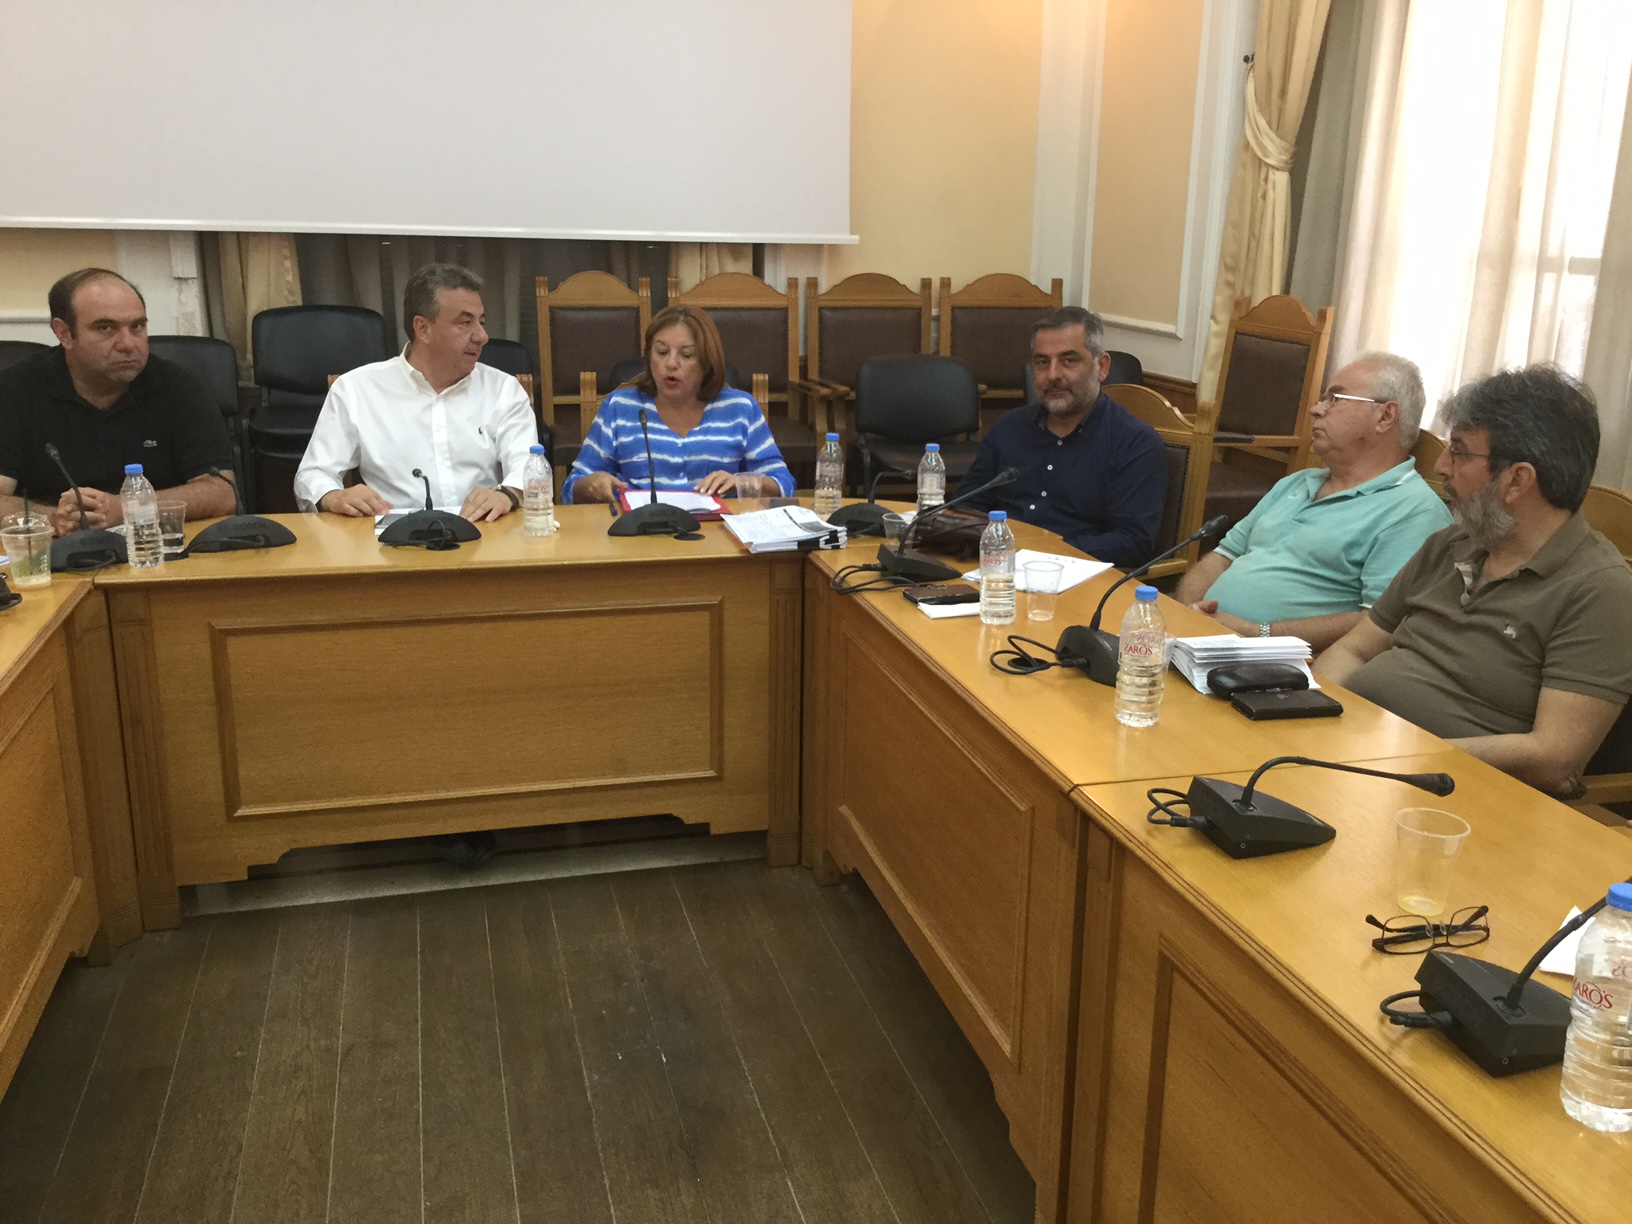 Οι Αναπτυξιακές Εταιρίες της Κρήτης αναλαμβάνουν τη διαχείριση προγραμμάτων κοινωνικής ένταξης και απασχόλησης στις αγροτικές περιοχές της Κρήτης